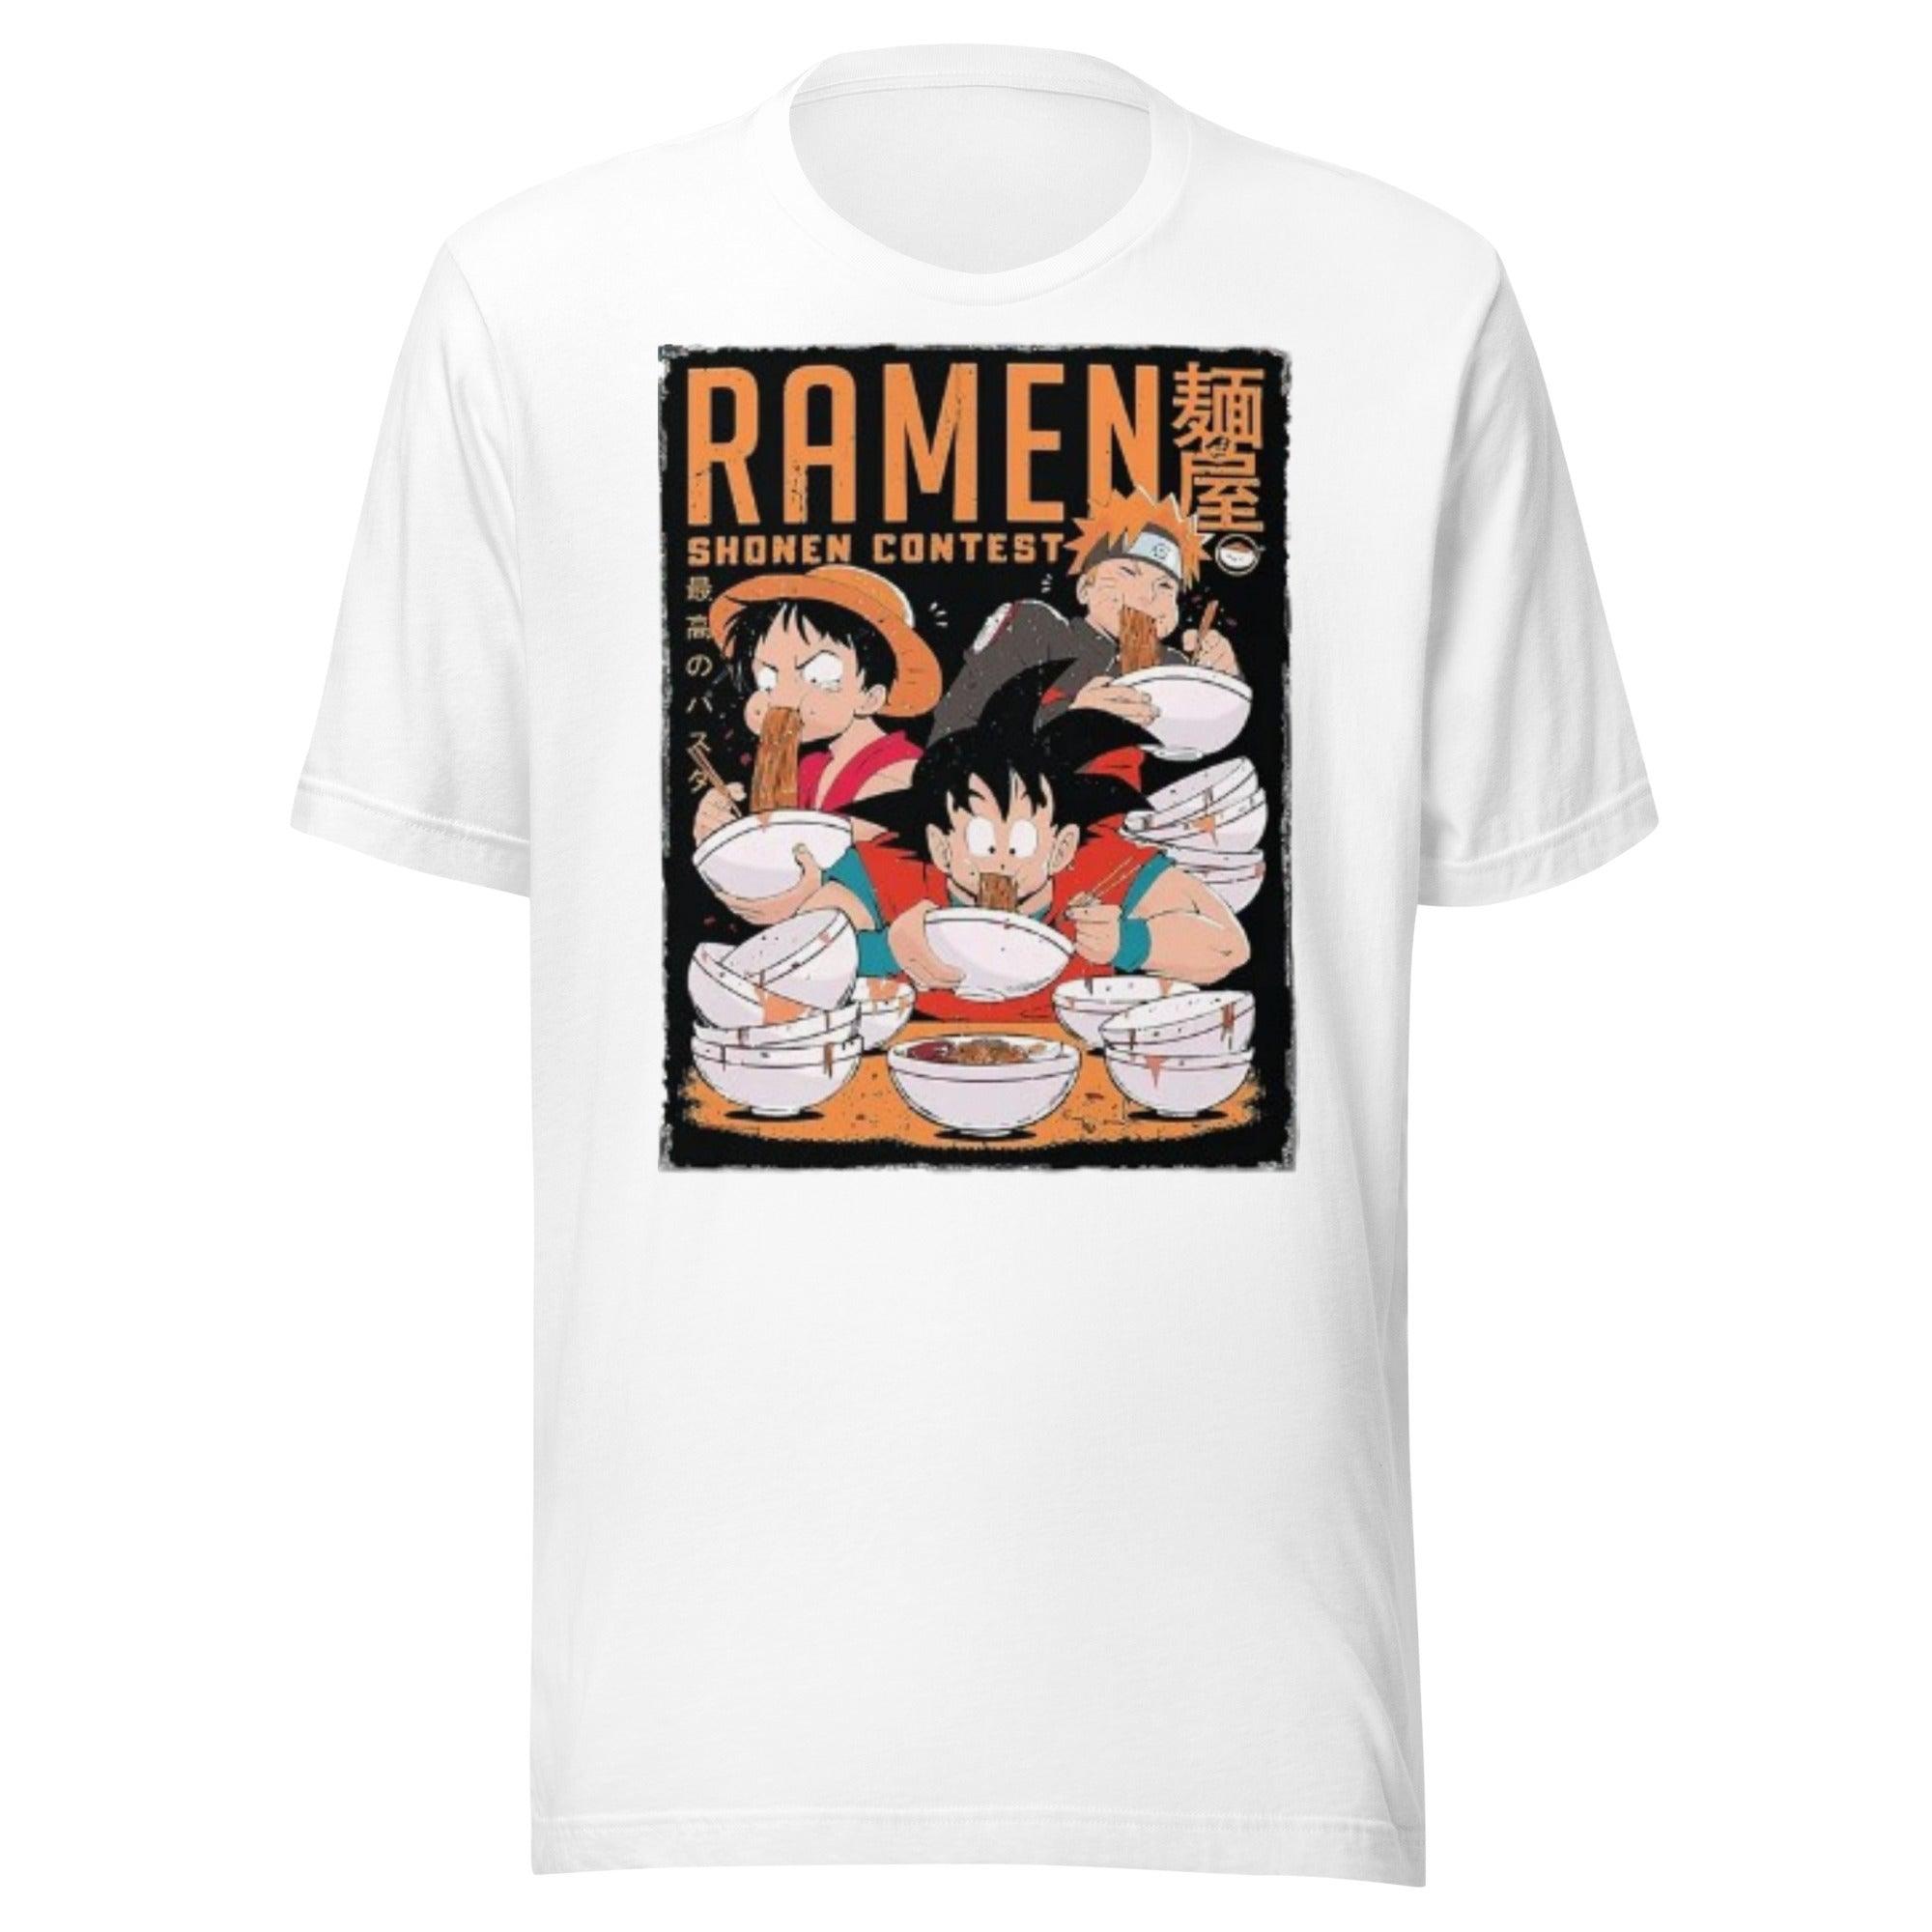 Anime T-Shirt Ramen Contest Short Sleeve Ultra Soft Cotton Crewneck Unisex Top - TopKoalaTee